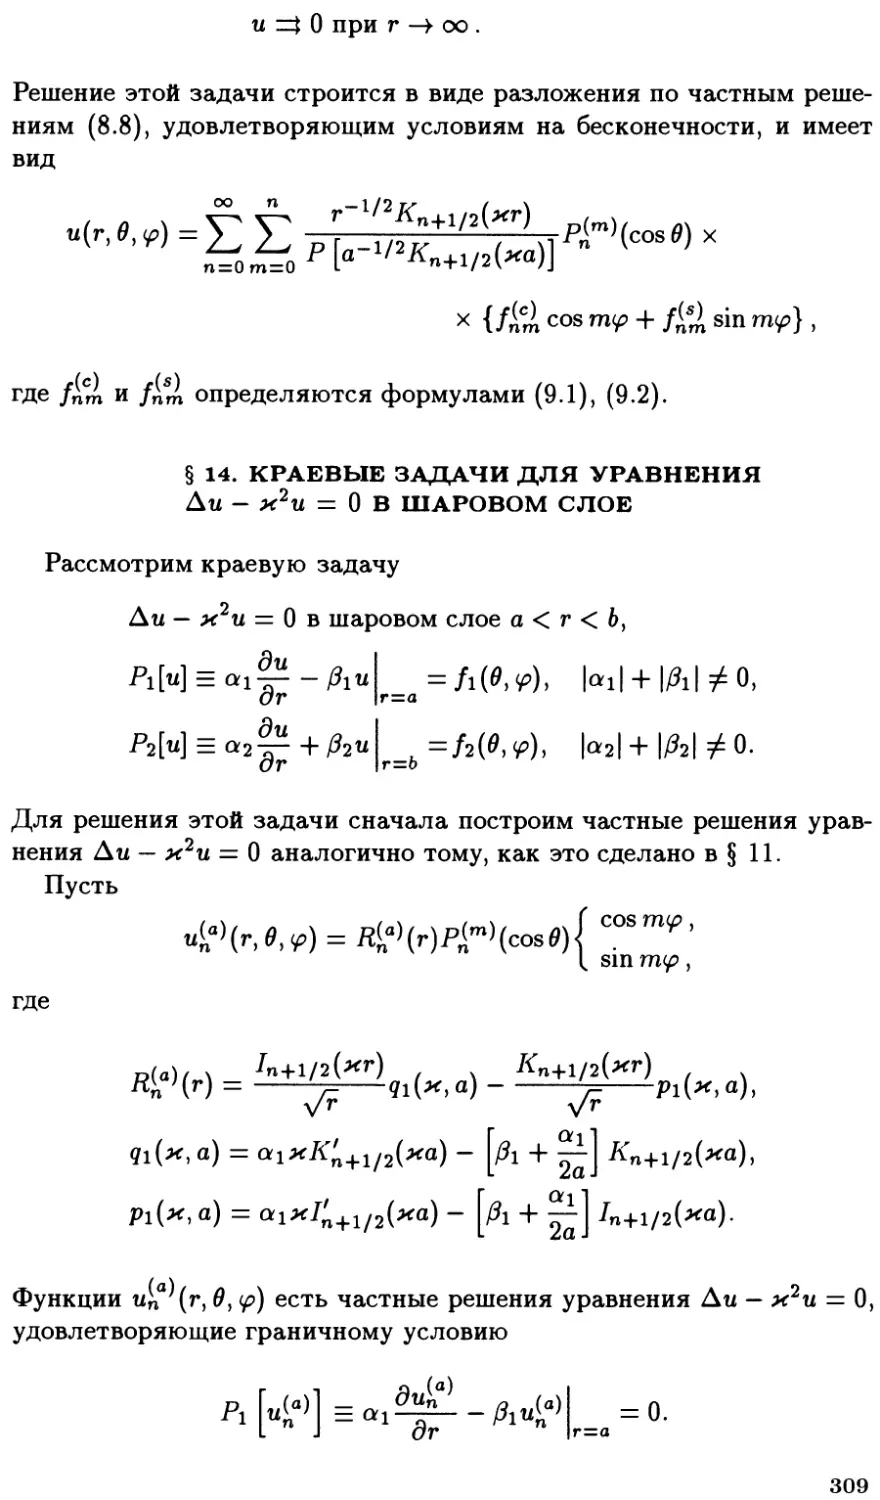 §14. Краевые задачи для уравнения $\Delta u - k^2 u = 0$ в шаровом слое